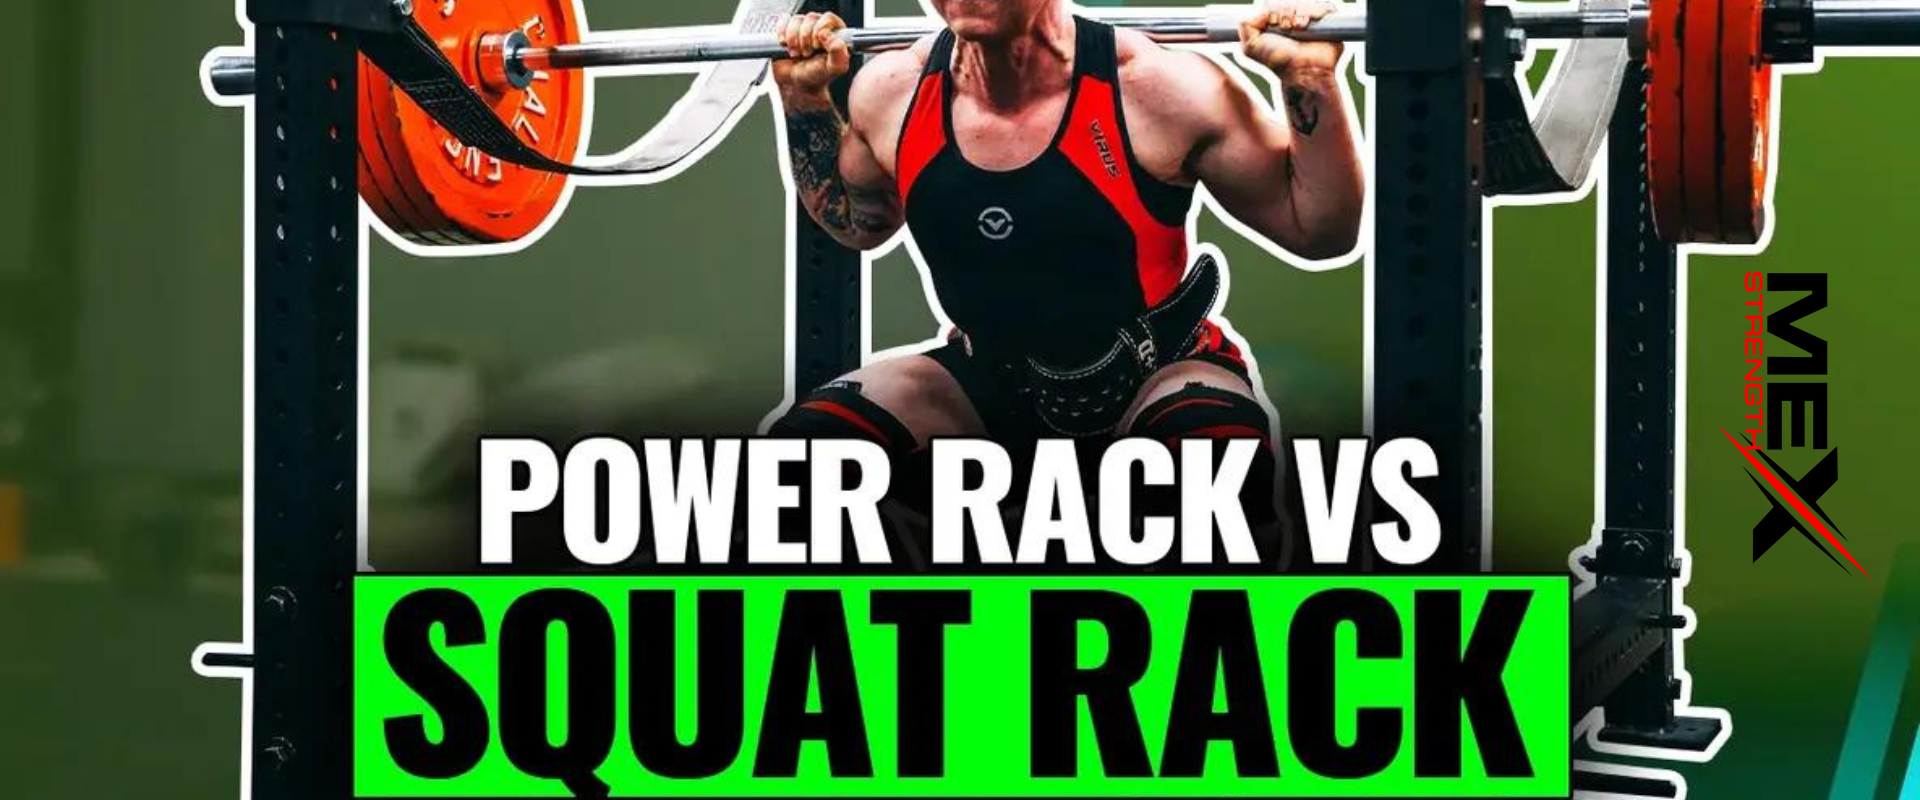 Squat Rack vs Power Rack